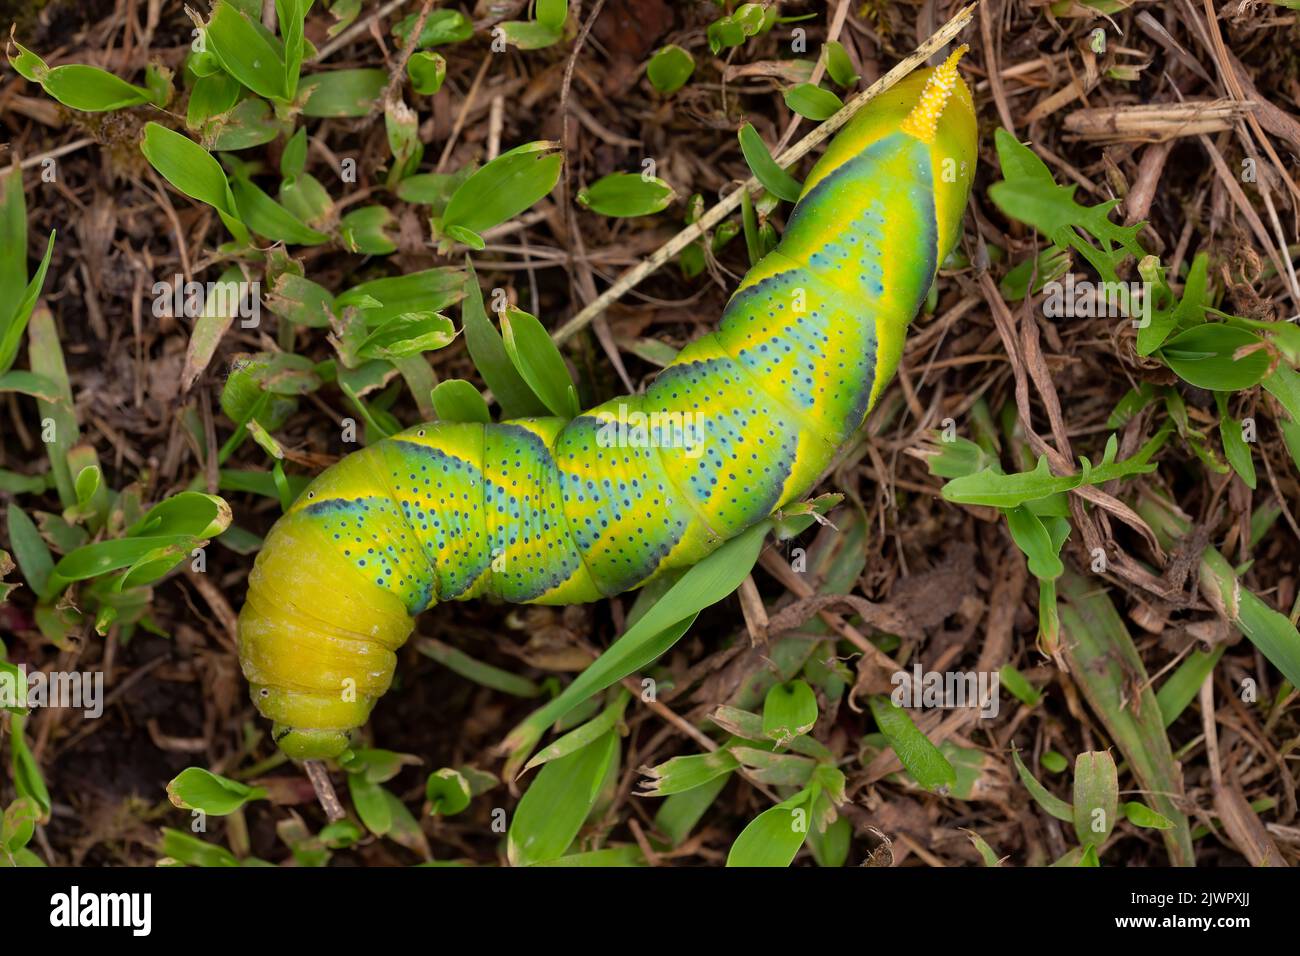 zenith view of an acherontia atropos caterpillar. macro photography. Copy pace. Nature wonderful Stock Photo